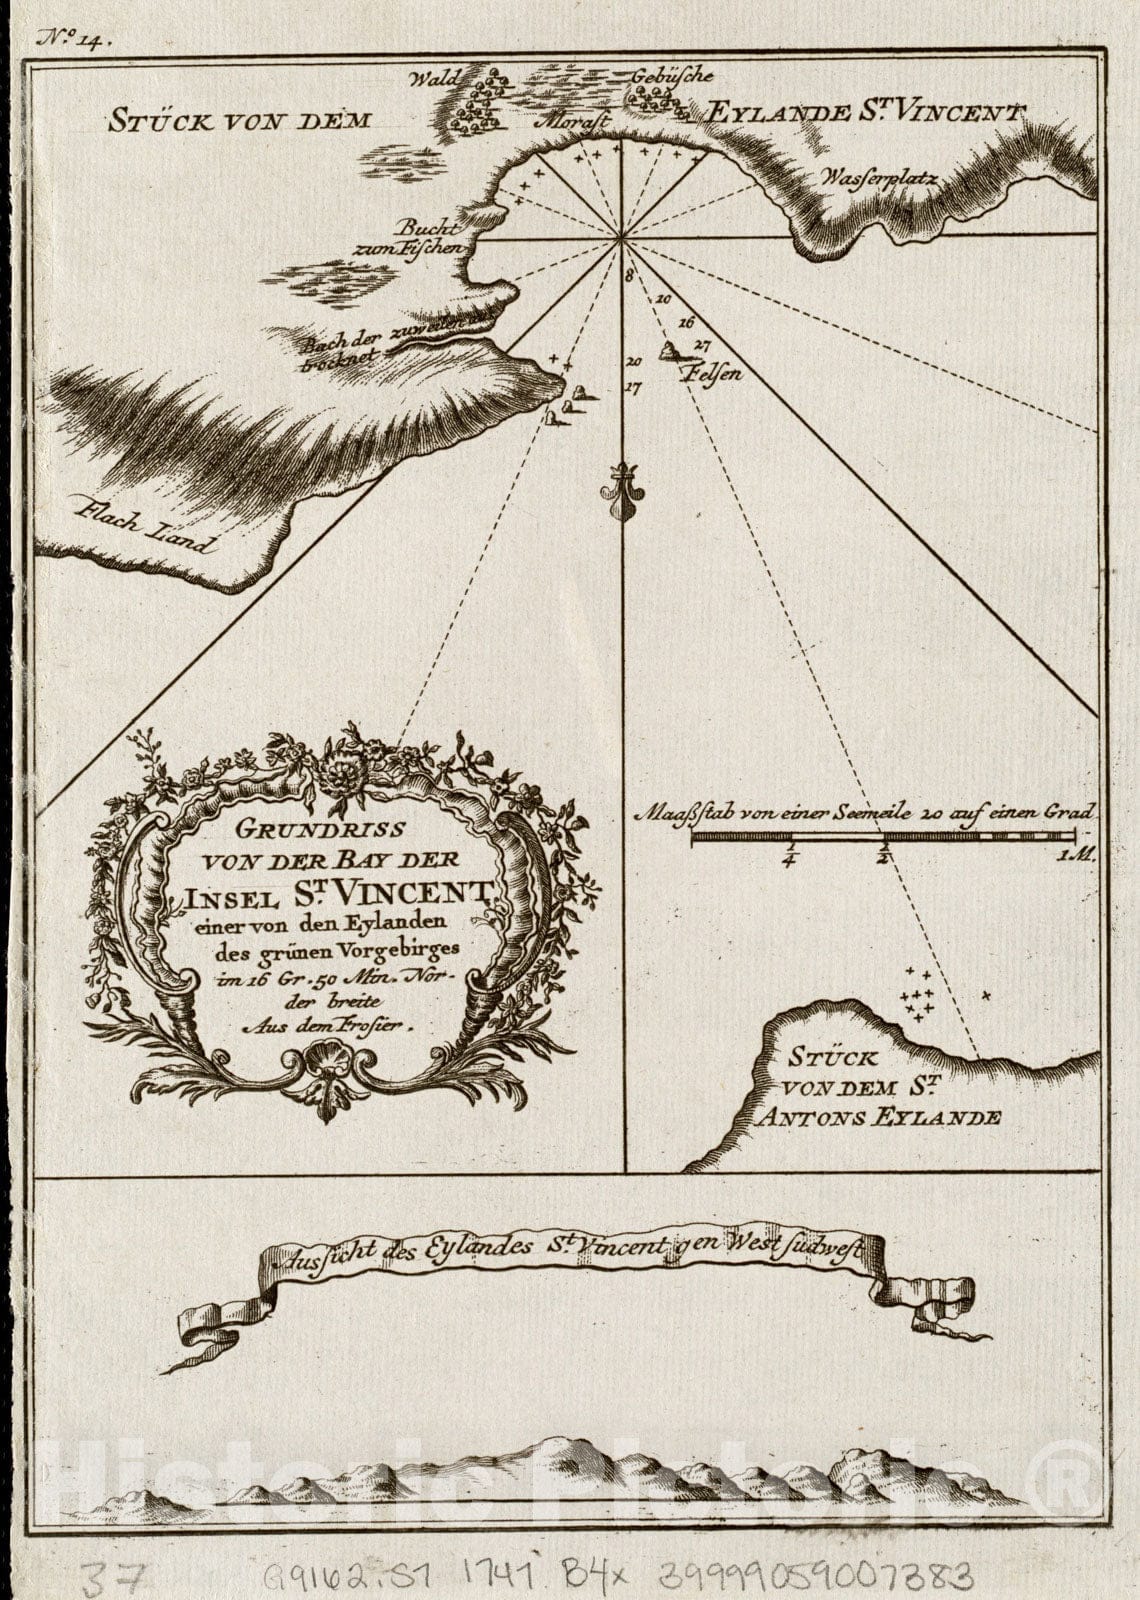 Historical Map, 1747 Grundriss von der Bay der insel St. Vincent Einer von den Eylanden des gruIË†nen Vorgebirges, Vintage Wall Art